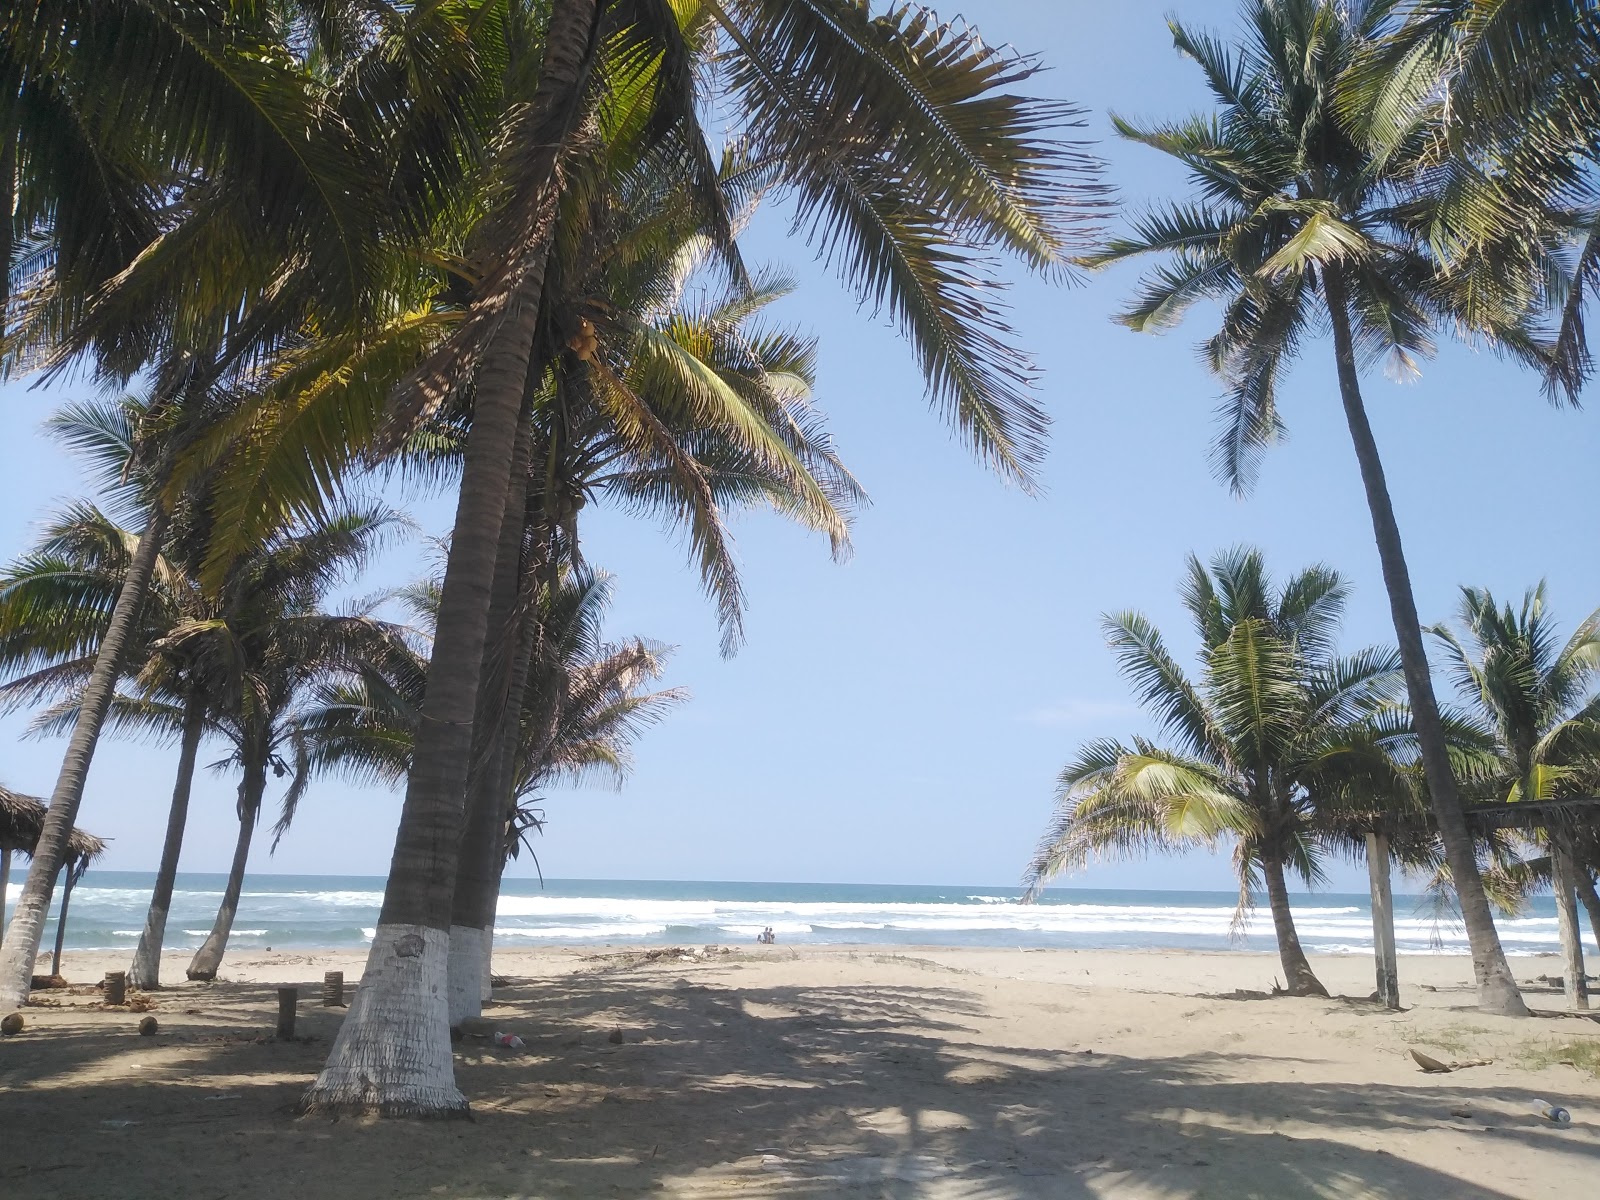 Foto de Playa Azul michoacan - lugar popular entre los conocedores del relax